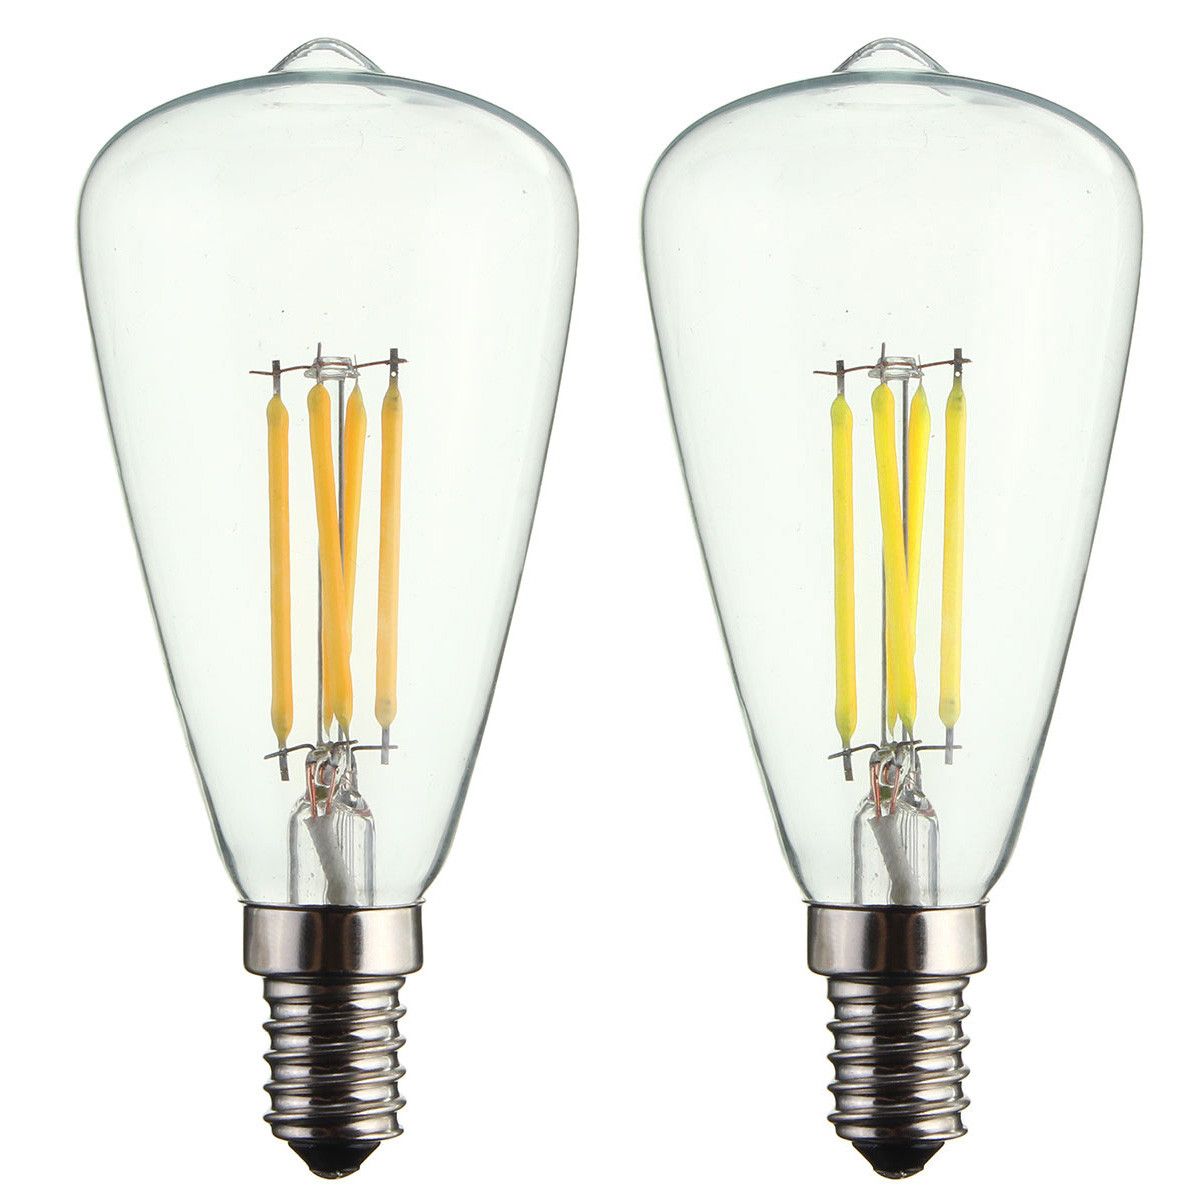 Kingso-AC220V-E14-4W-LED-Filament-COB-Light-Bulb-Edison-Retro-Vintage-Lamp-for-Home-Decor-1516116